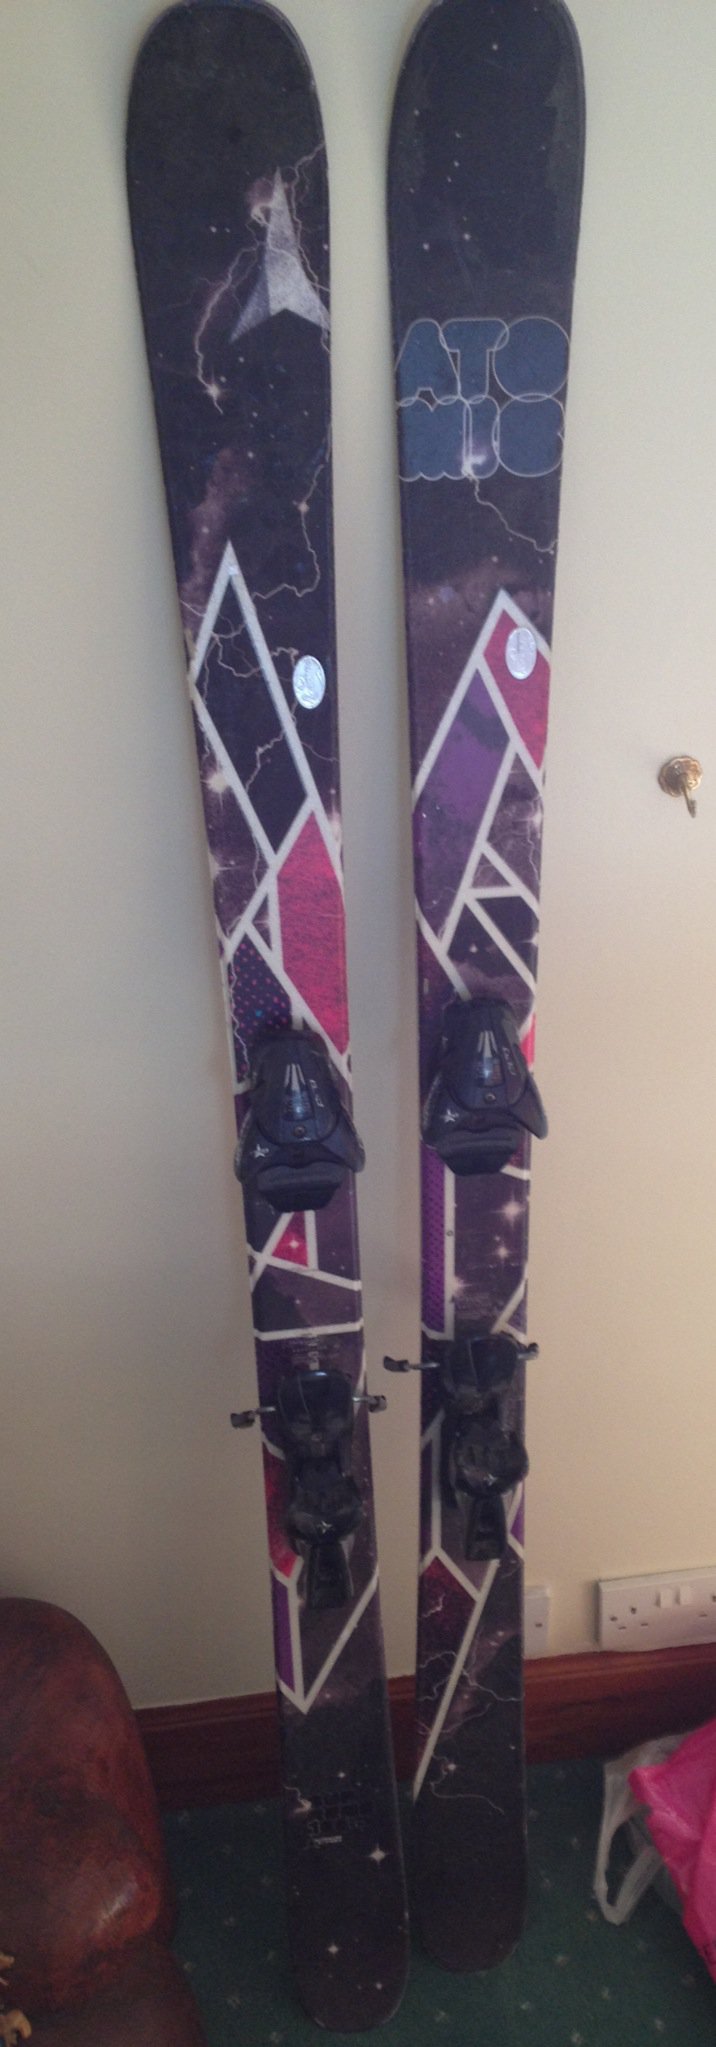 Atomic Supreme skis 165